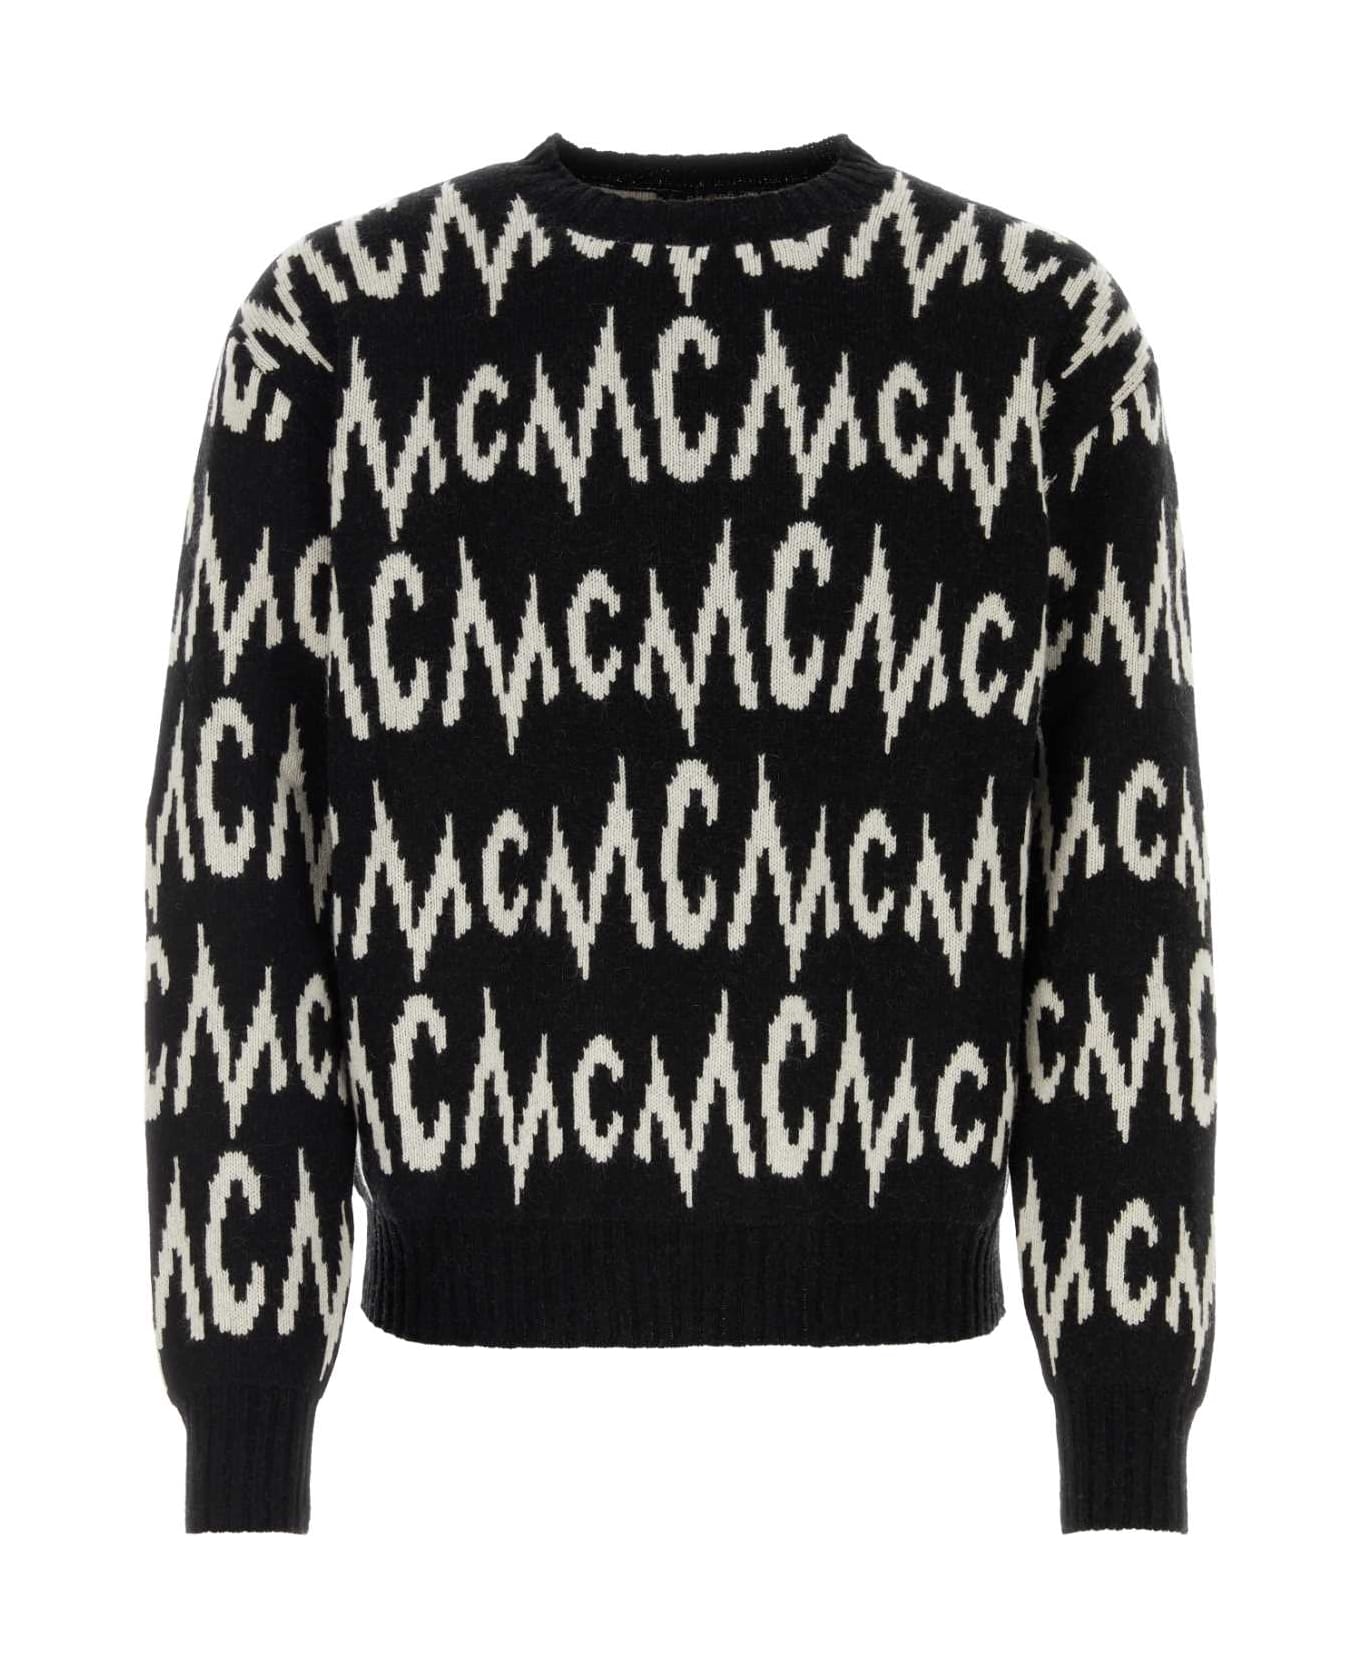 MCM Embroidered Cashmere Blend Sweater - BLACK + EGRET